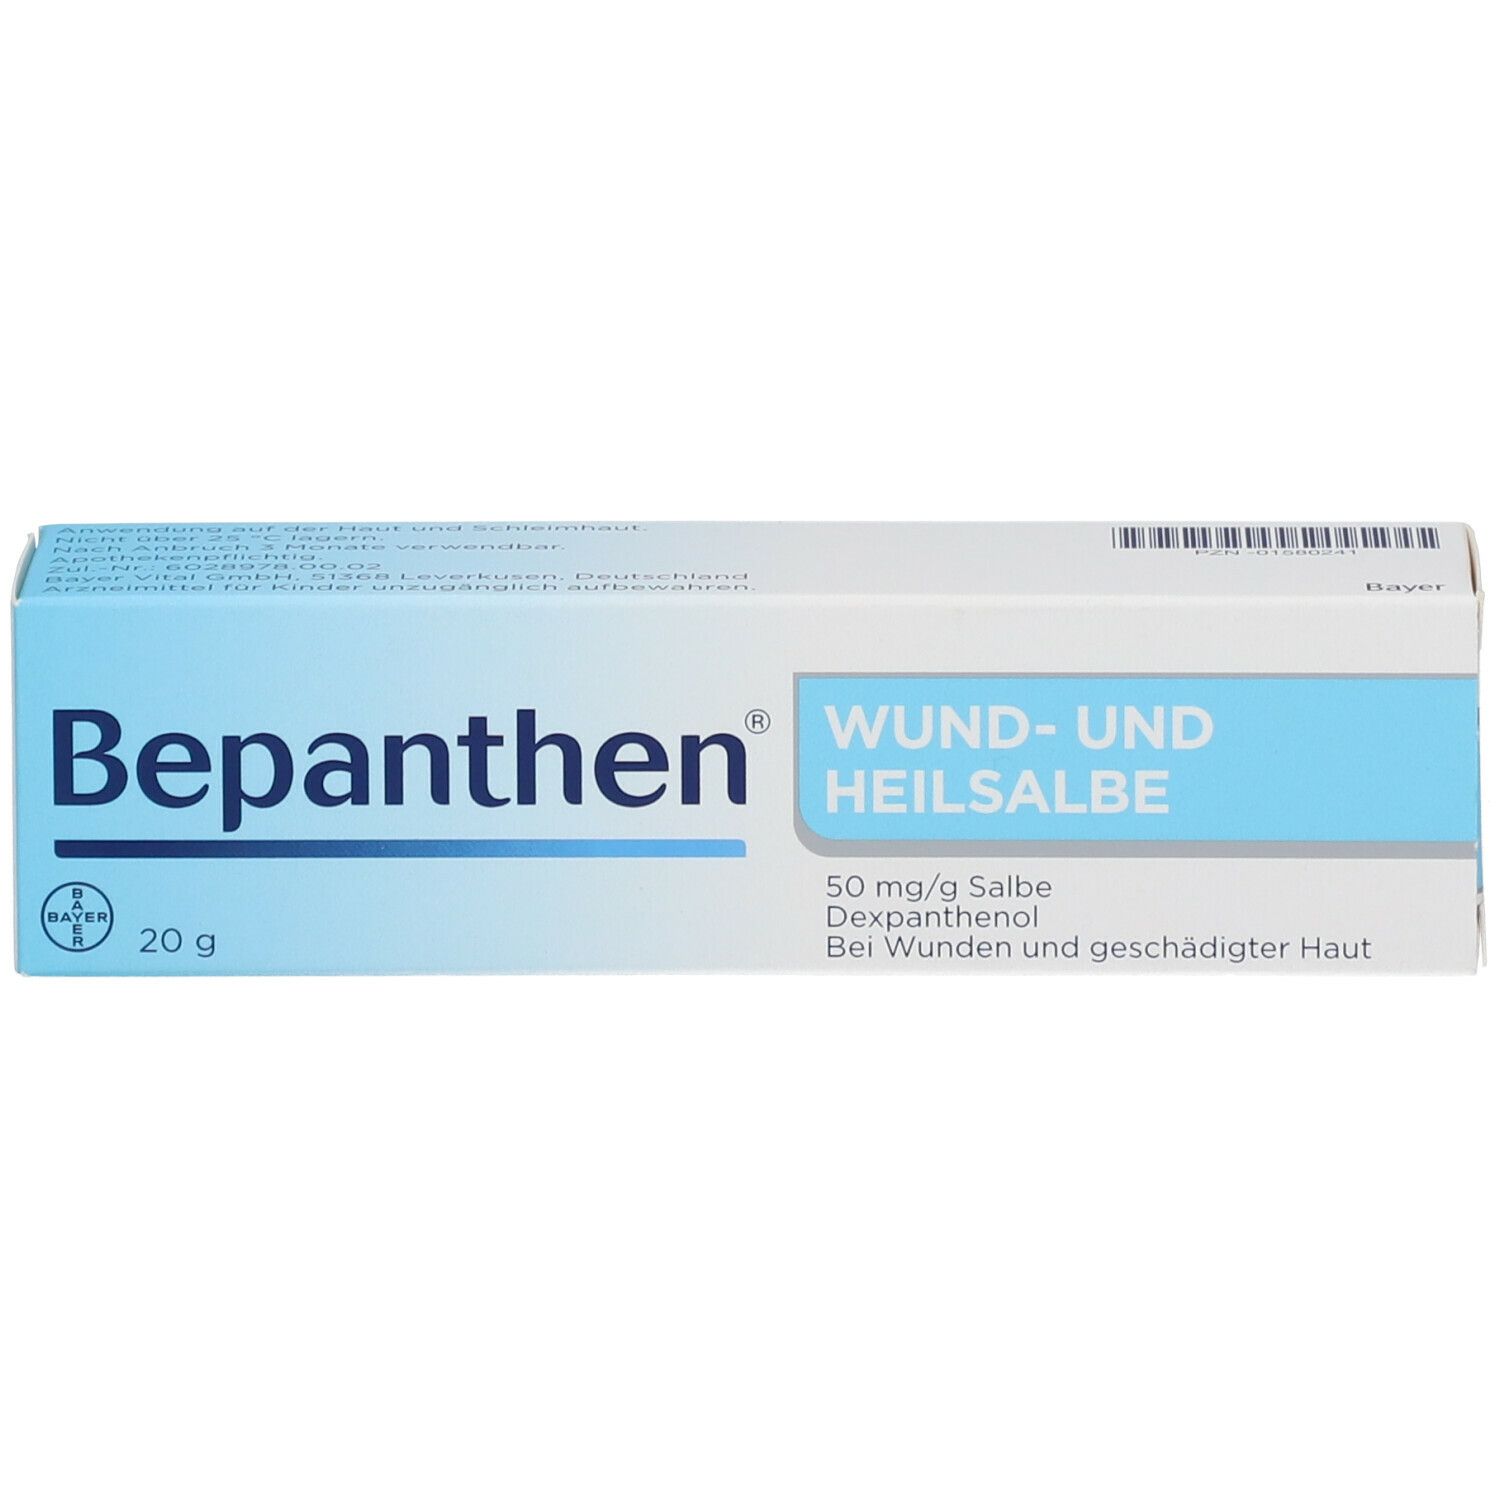 Bepanthen ® Wund- und Heilsalbe. ×. 1. von 16. 